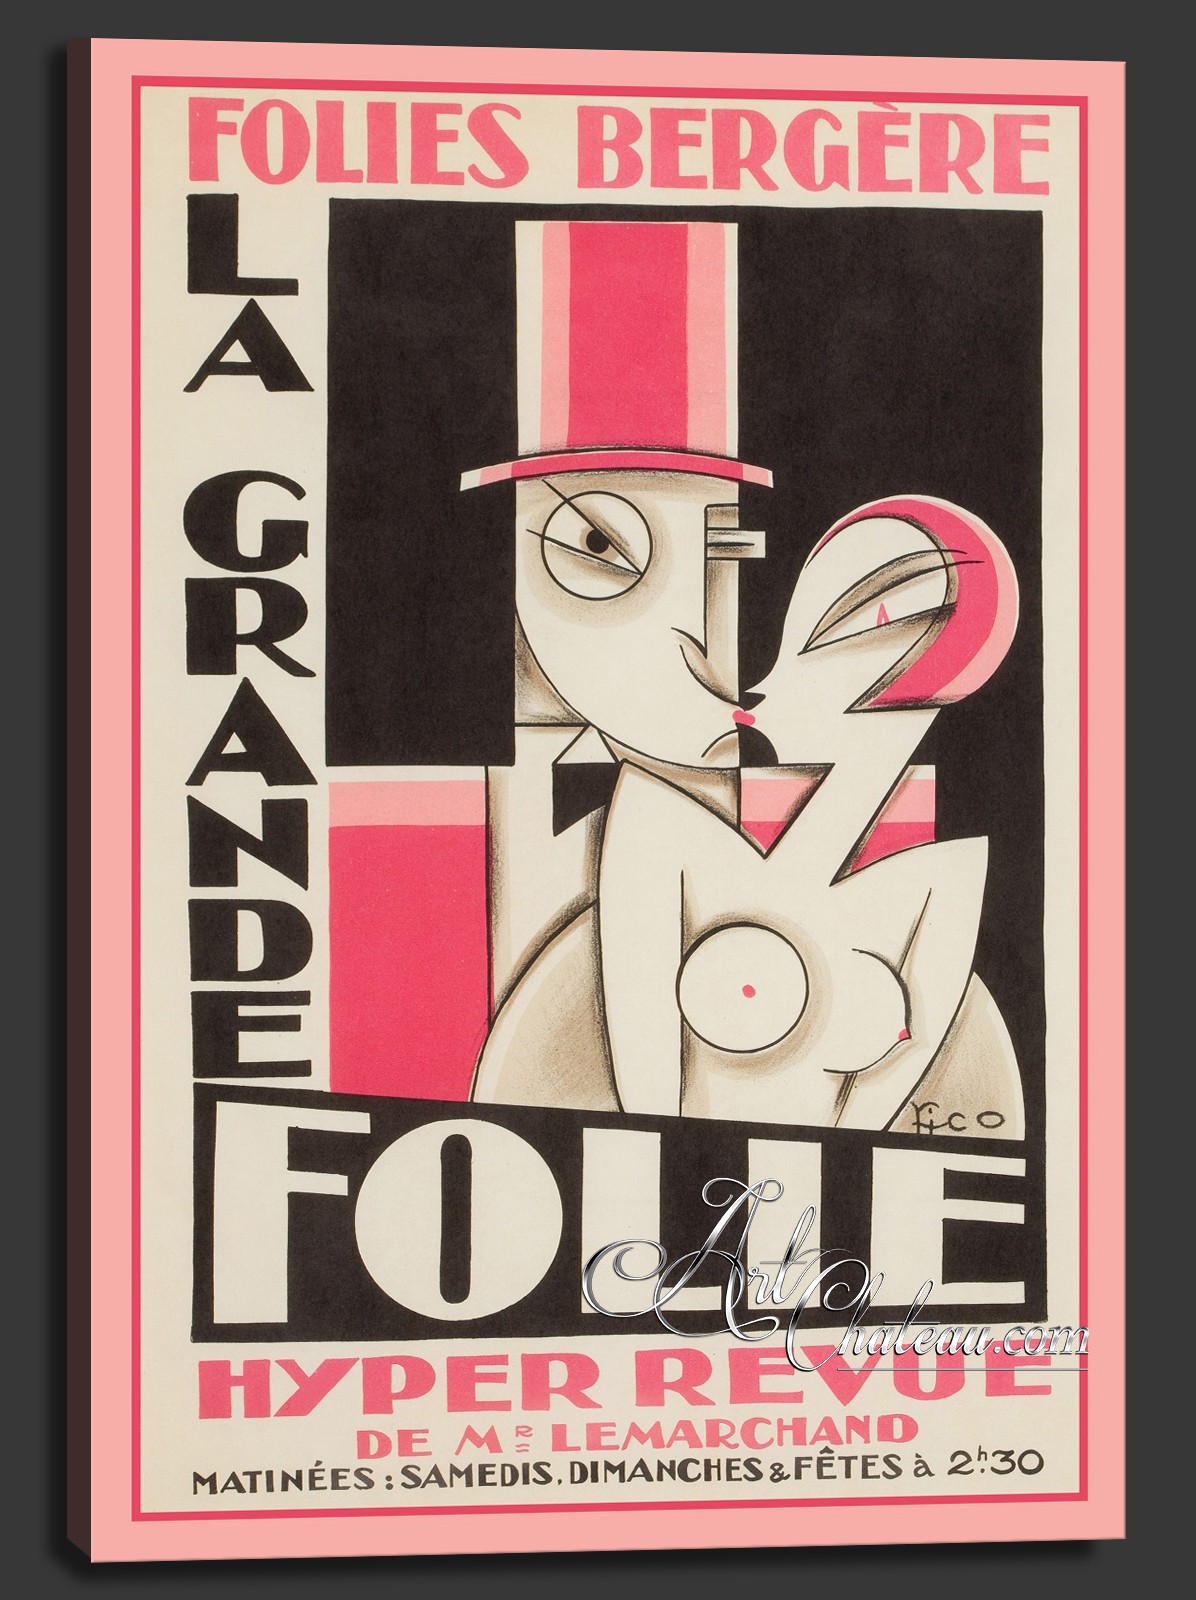 La Grande Folie, after Vintage Art Deco Poster